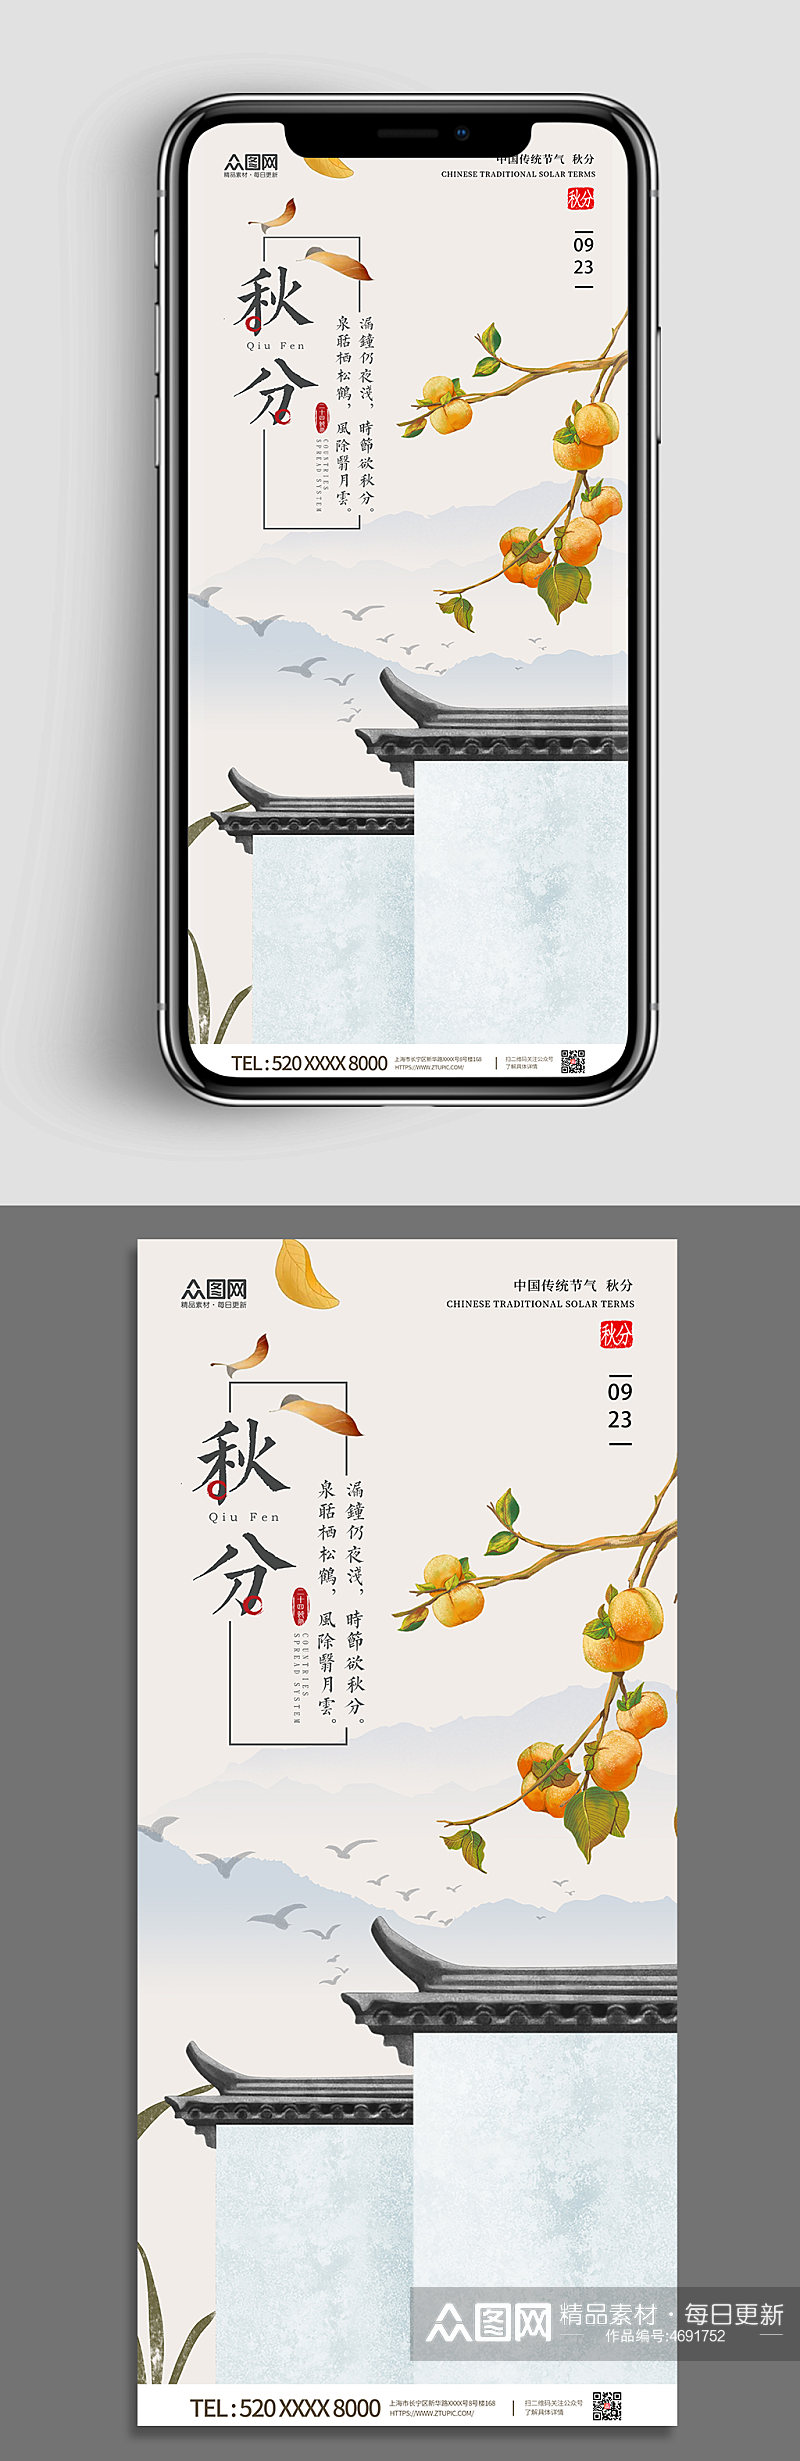 秋分节气中国风传统24节气手机壁纸海报素材